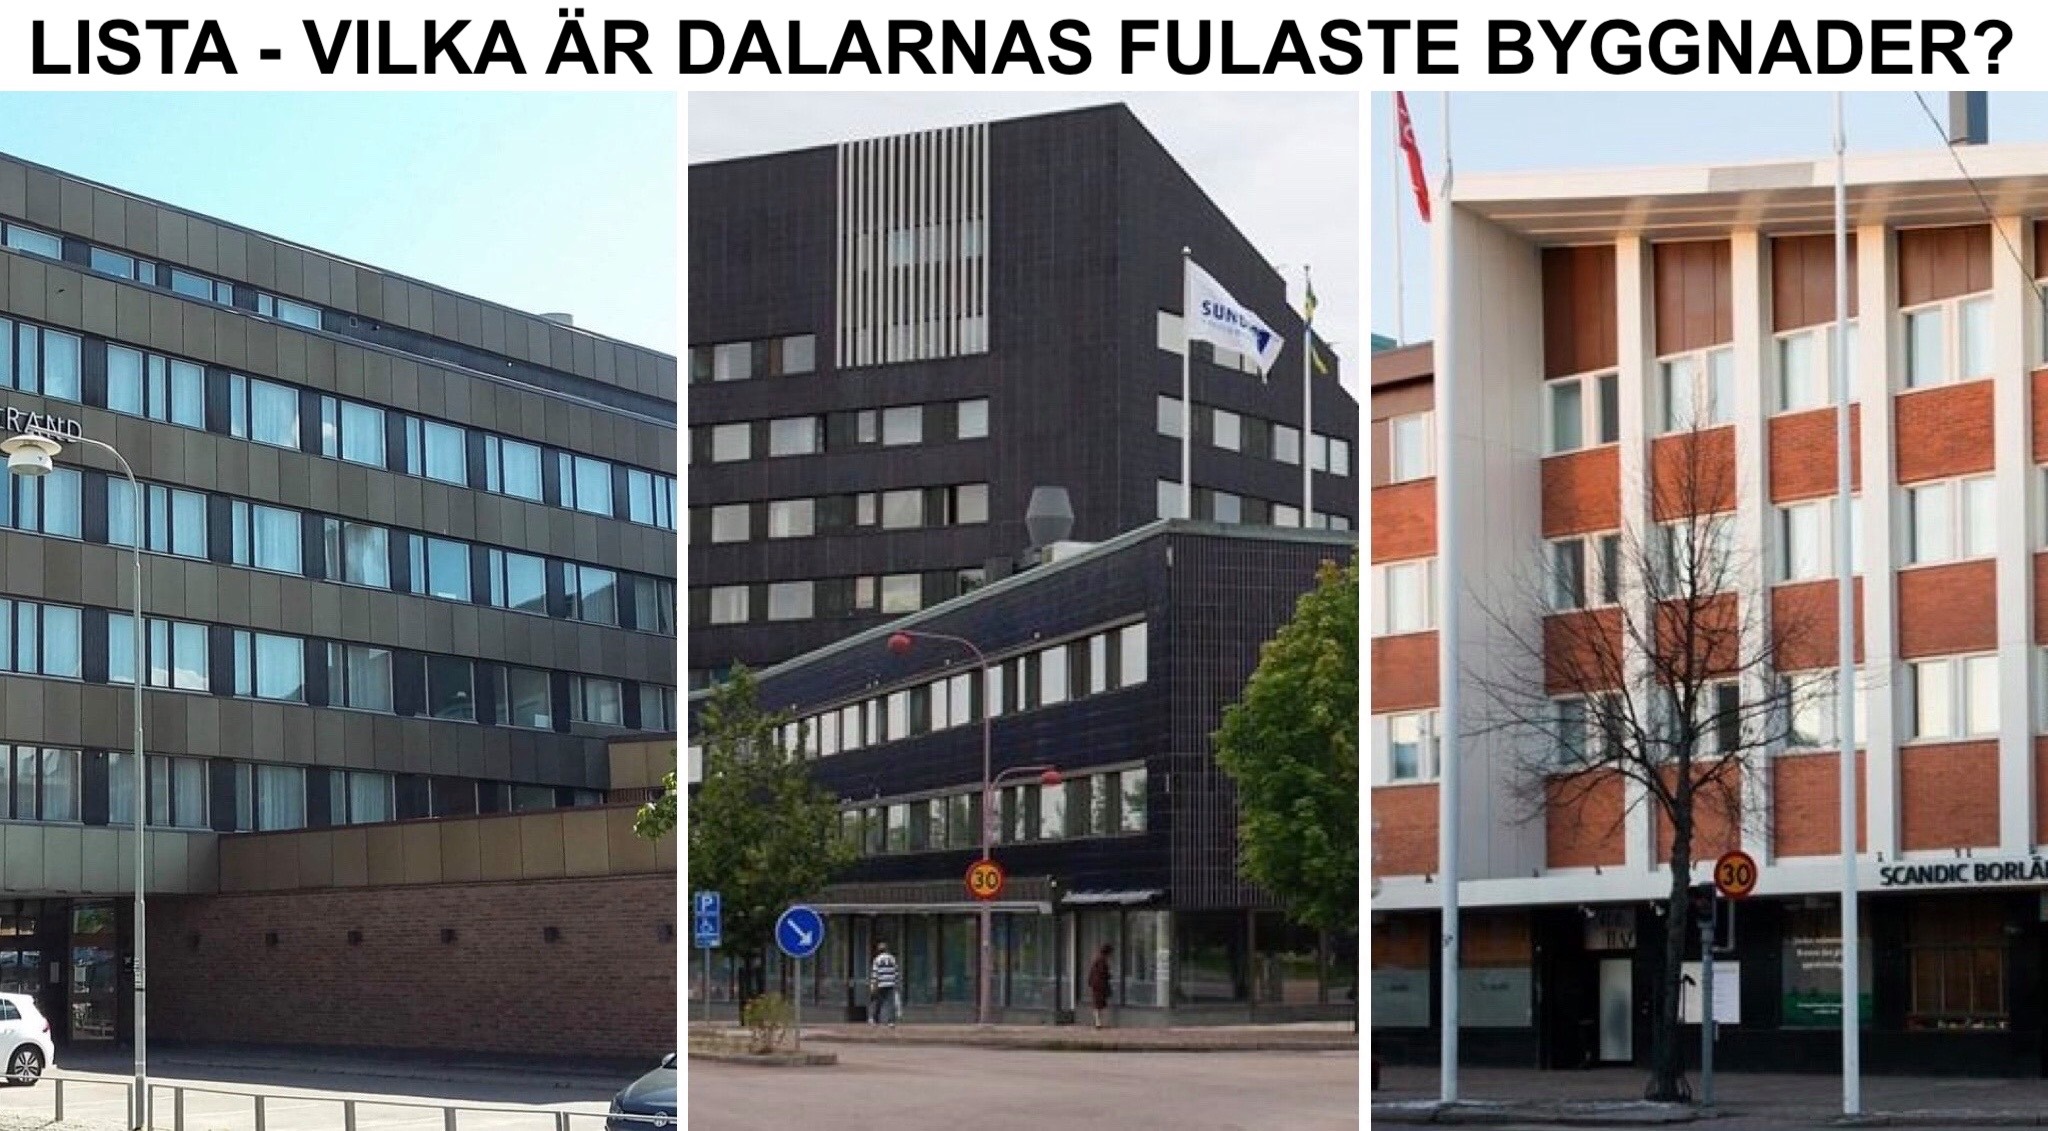 Lista - Dalarnas fulaste byggnader, dvs Falun, Borlänge, Ludvika, Mora, Avesta osv.